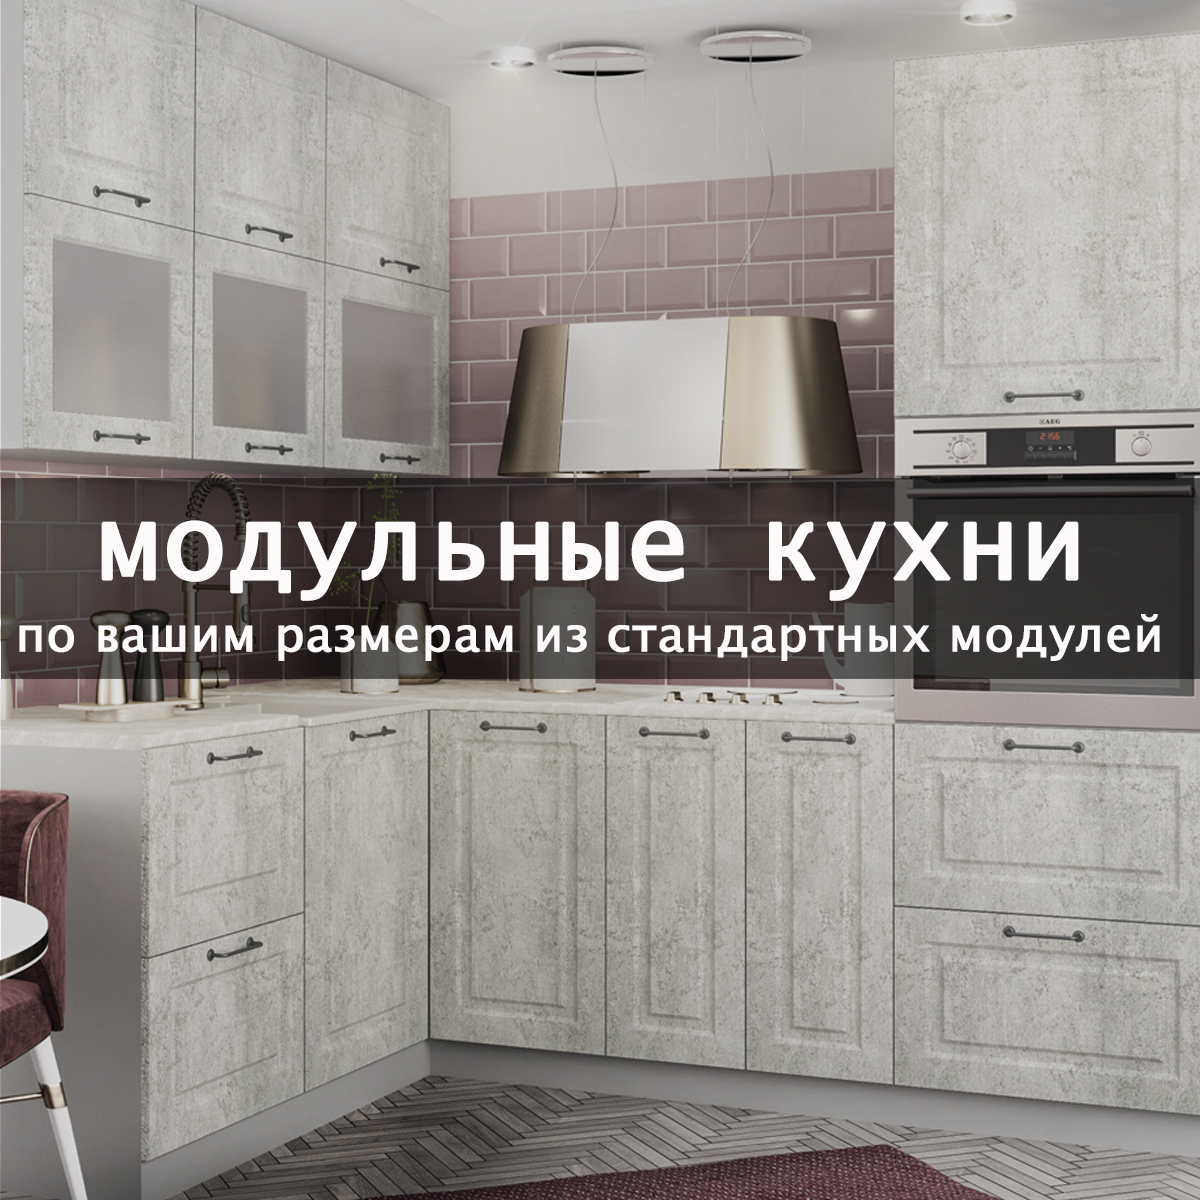 Кухни Модульные Новосибирск Фото И Цены